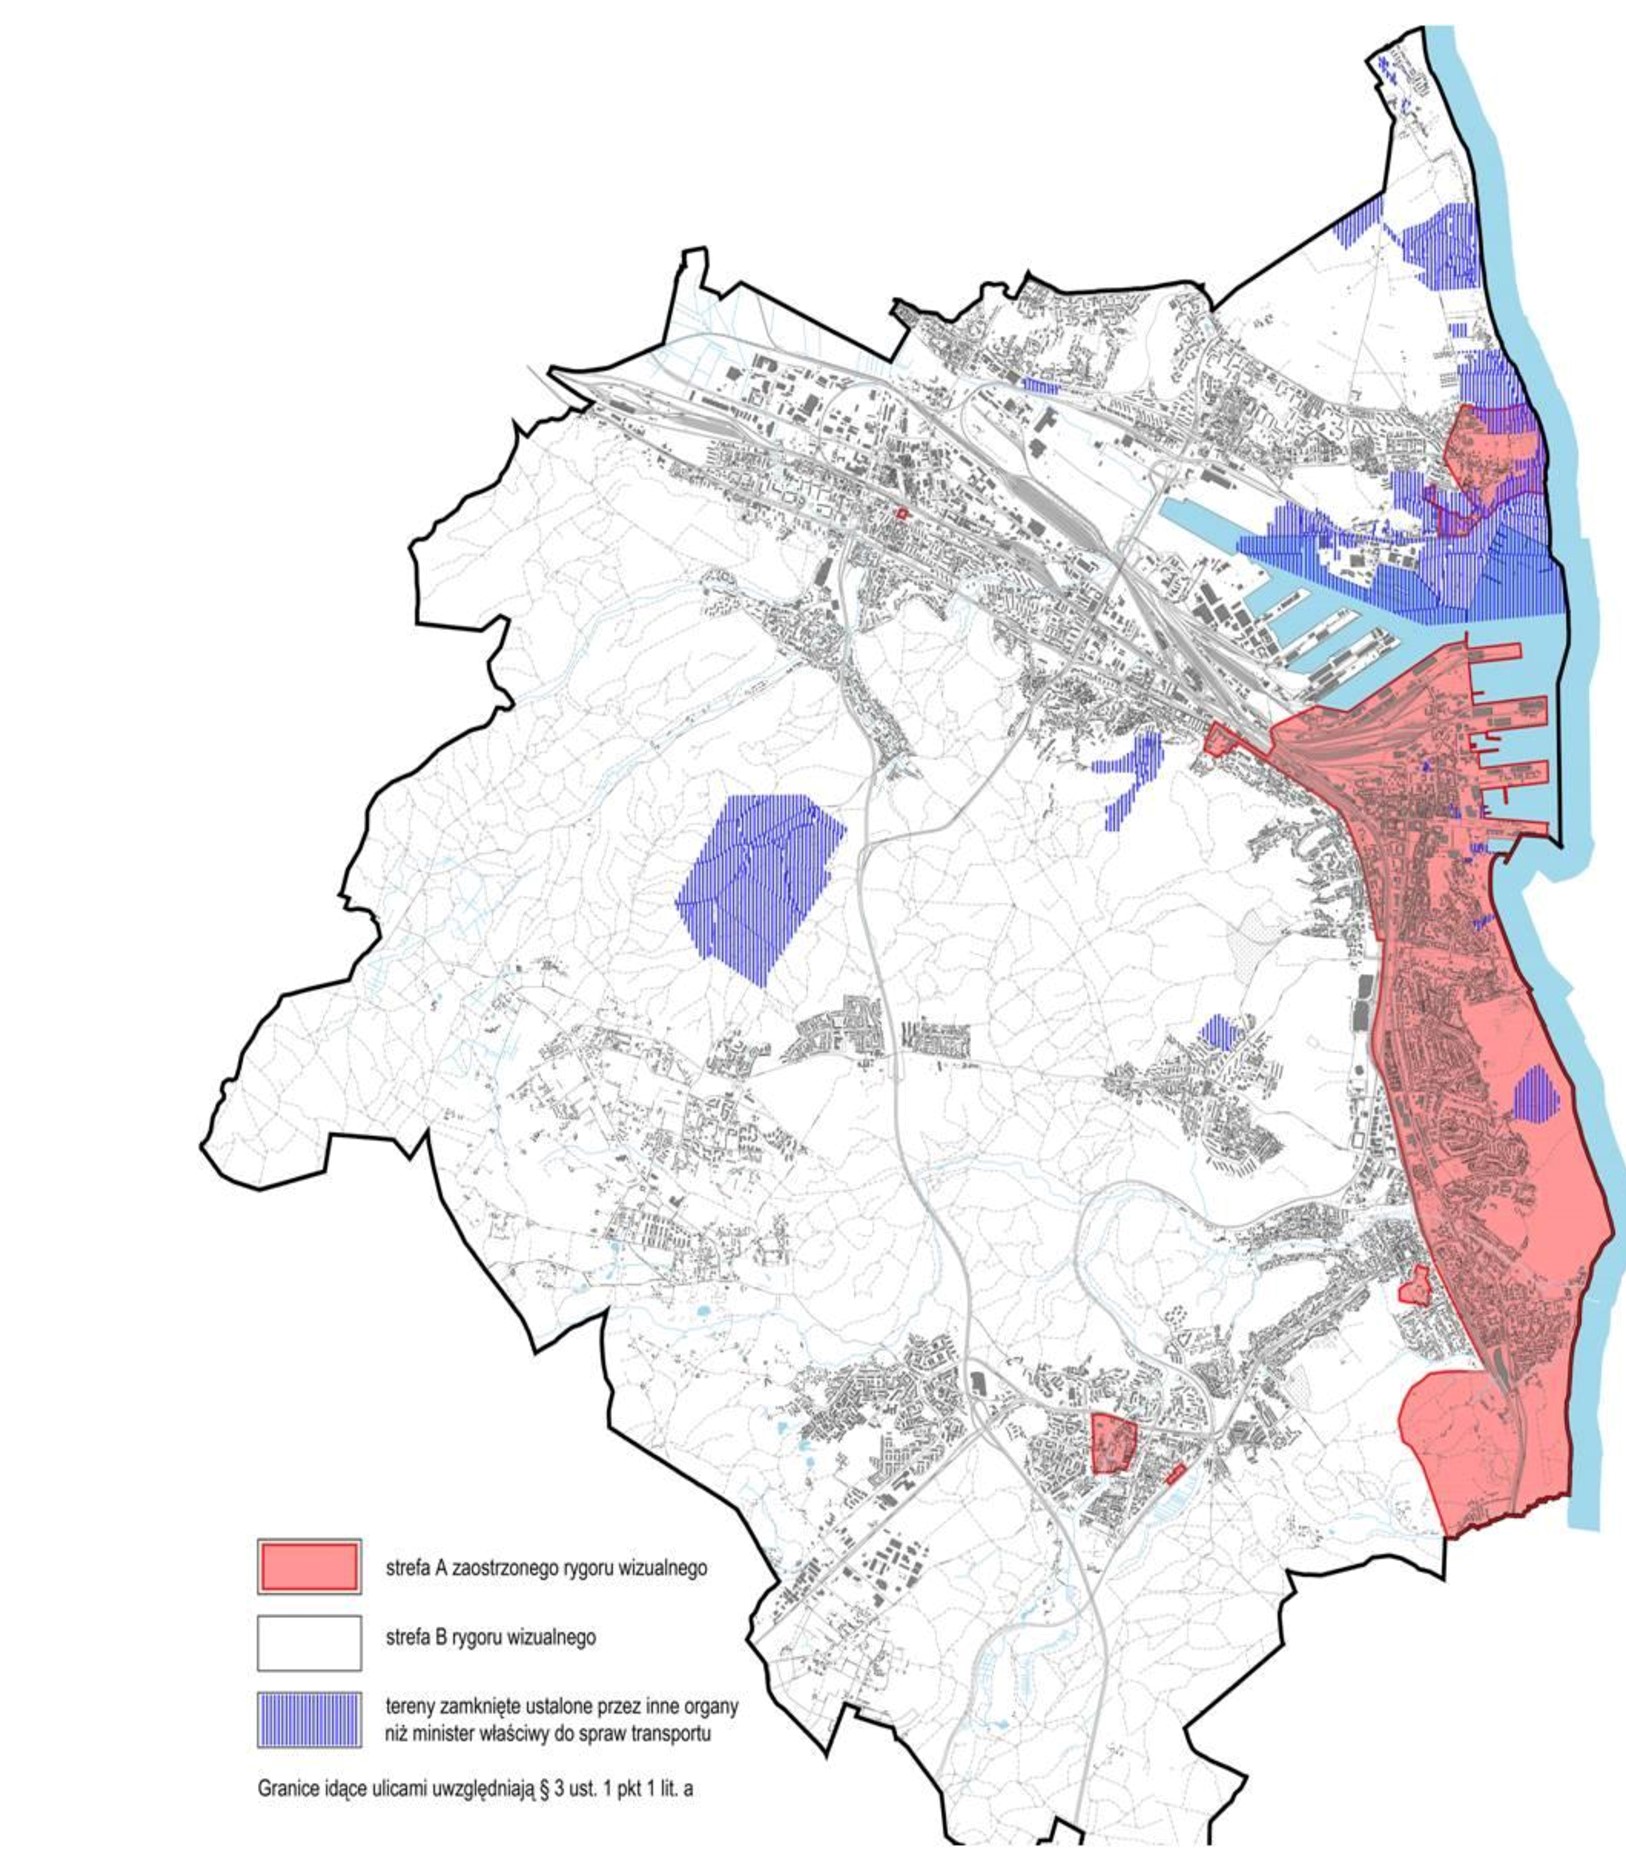 Mapa Gdyni z podziałem na strefę A (zaostrzonego rygoru wizualnego) obejmować będzie między innymi: centralny obszar miasta w tym Śródmieście, Orłowo - zaznaczone na czerwono oraz strefę B - pozostała część miasta, gdzie obowiązywac będzie rygor wizulany zgodny z uchwałą. 